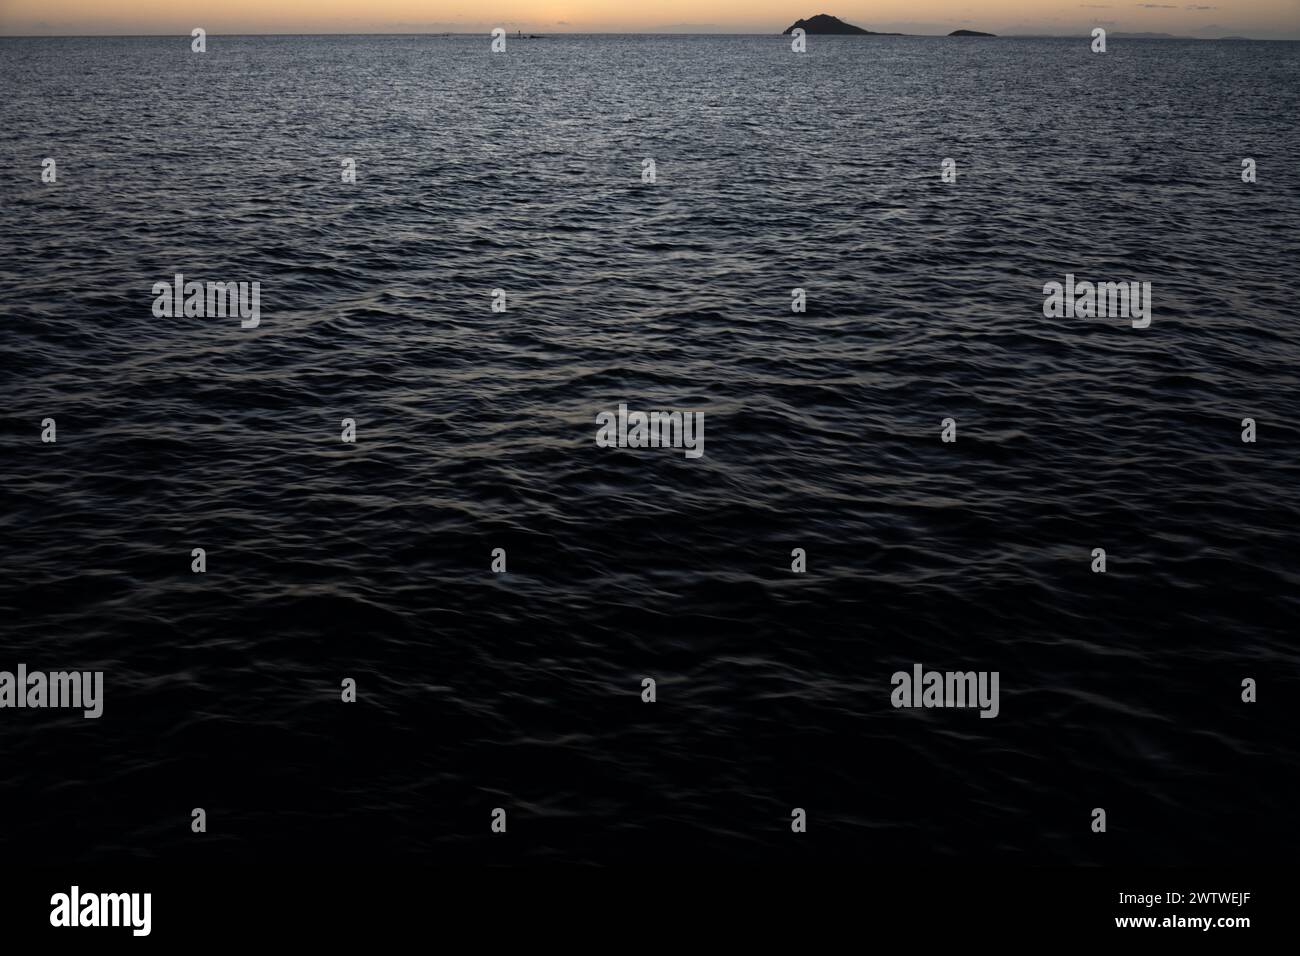 Una serena scena crepuscolare con una luce minimale su un mare calmo e lontane isole sagomate all'orizzonte Foto Stock